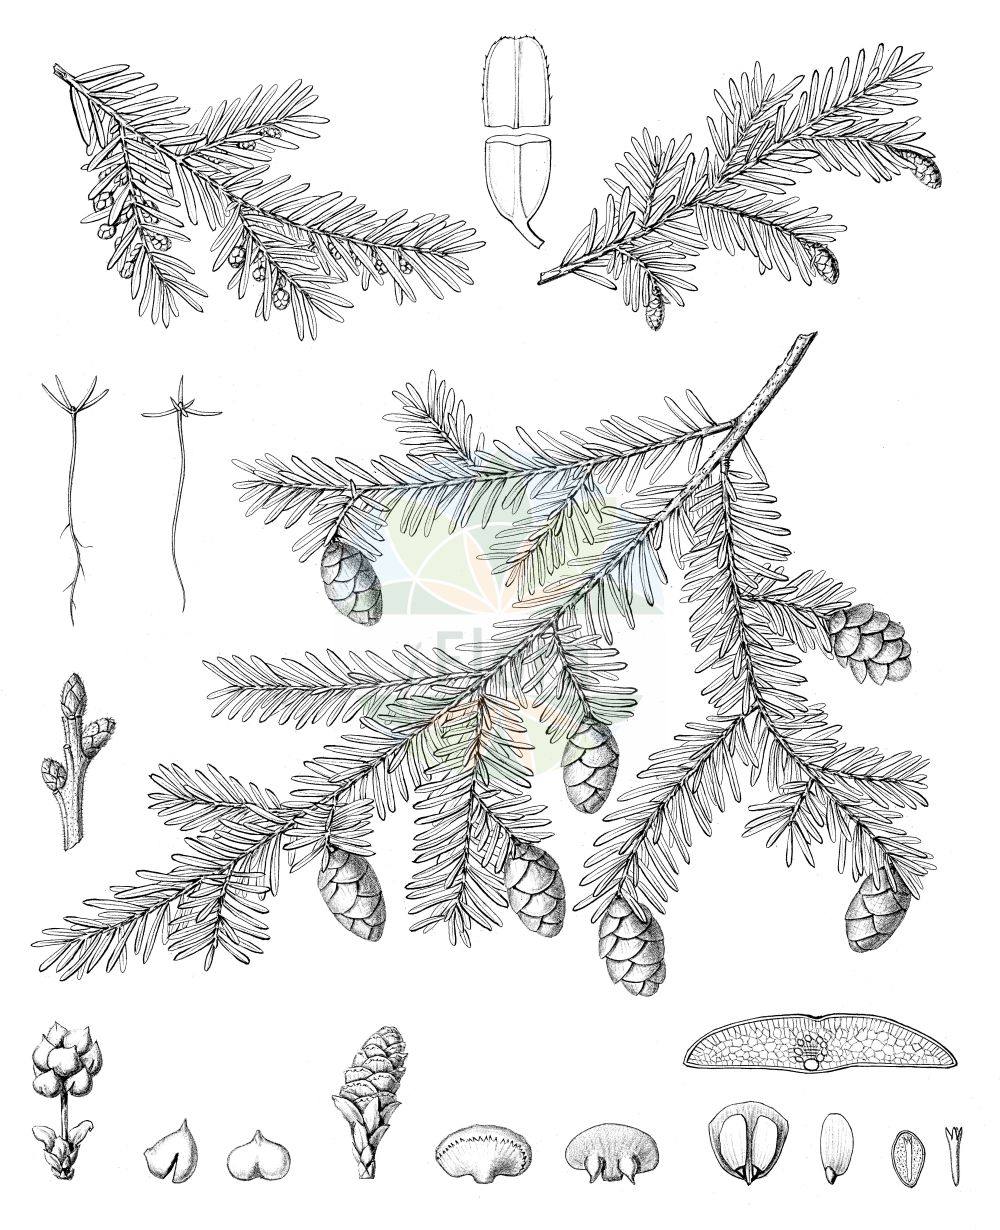 Historische Abbildung von Tsuga canadensis (Kanadische Hemlocktanne - Eastern Hemlock-spruce). Das Bild zeigt Blatt, Bluete, Frucht und Same. ---- Historical Drawing of Tsuga canadensis (Kanadische Hemlocktanne - Eastern Hemlock-spruce). The image is showing leaf, flower, fruit and seed.(Tsuga canadensis,Kanadische Hemlocktanne,Eastern Hemlock-spruce,Pinus canadensis,Tsuga canadensis,Kanadische Hemlocktanne,Schierlingstanne,Eastern Hemlock-spruce,Canada Hemlock,Eastern Hemlock,Tsuga,Hemlocktanne,Hemlock-spruce,Pinaceae,Kieferngewächse,Pine family,Blatt,Bluete,Frucht,Same,leaf,flower,fruit,seed,Sargent (1891-1902))